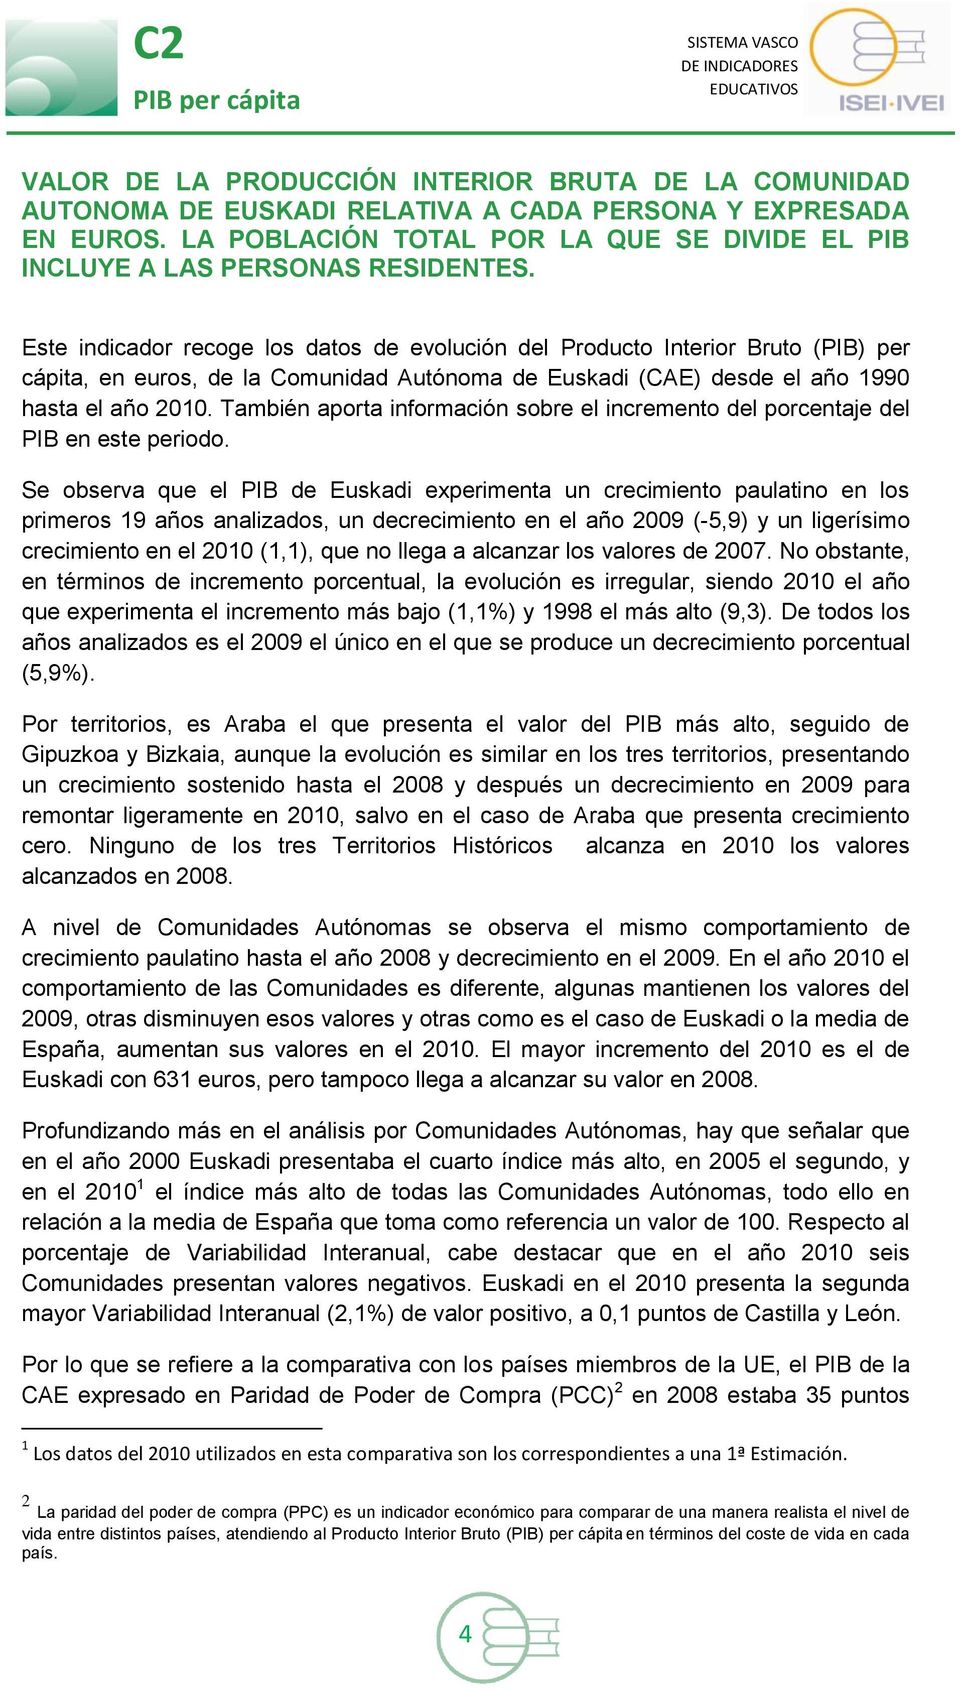 Este indicador recoge los datos de evolución del Producto Interior Bruto (PIB) per cápita, en euros, de la Comunidad Autónoma de Euskadi (CAE) desde el año 1990 hasta el año 2010.